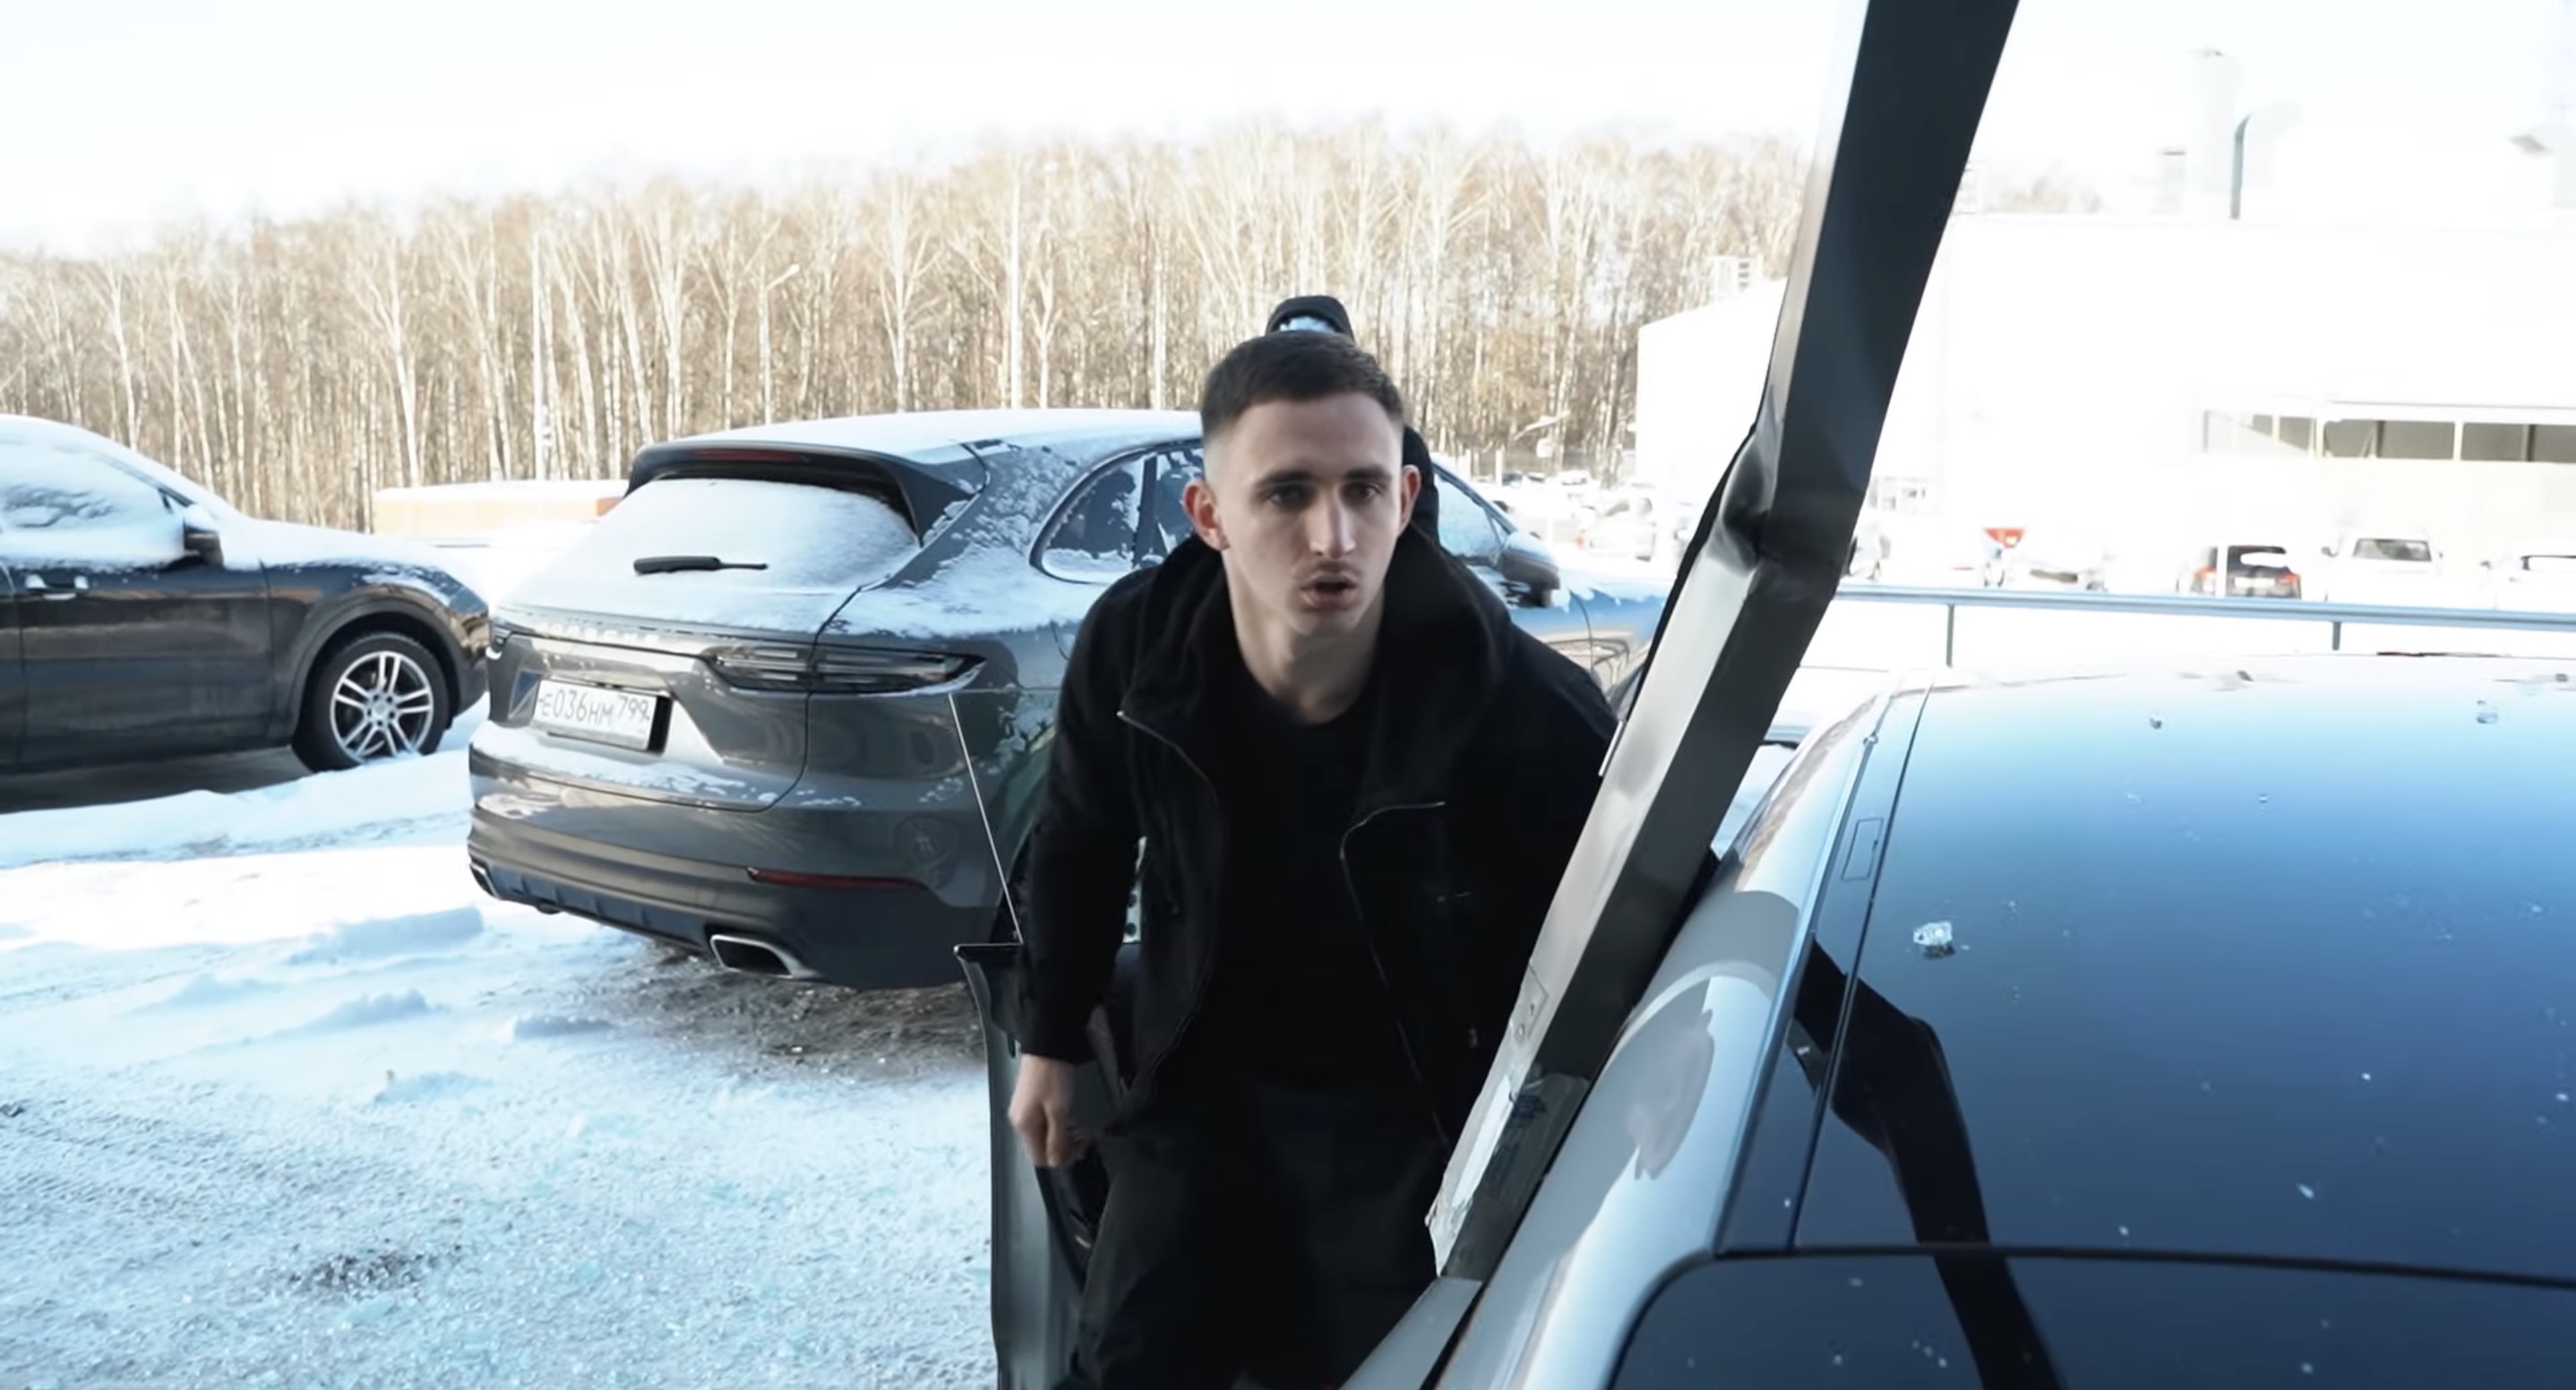 Российский блогер «перепутал педали» и въехал в витрину салона на Porsche